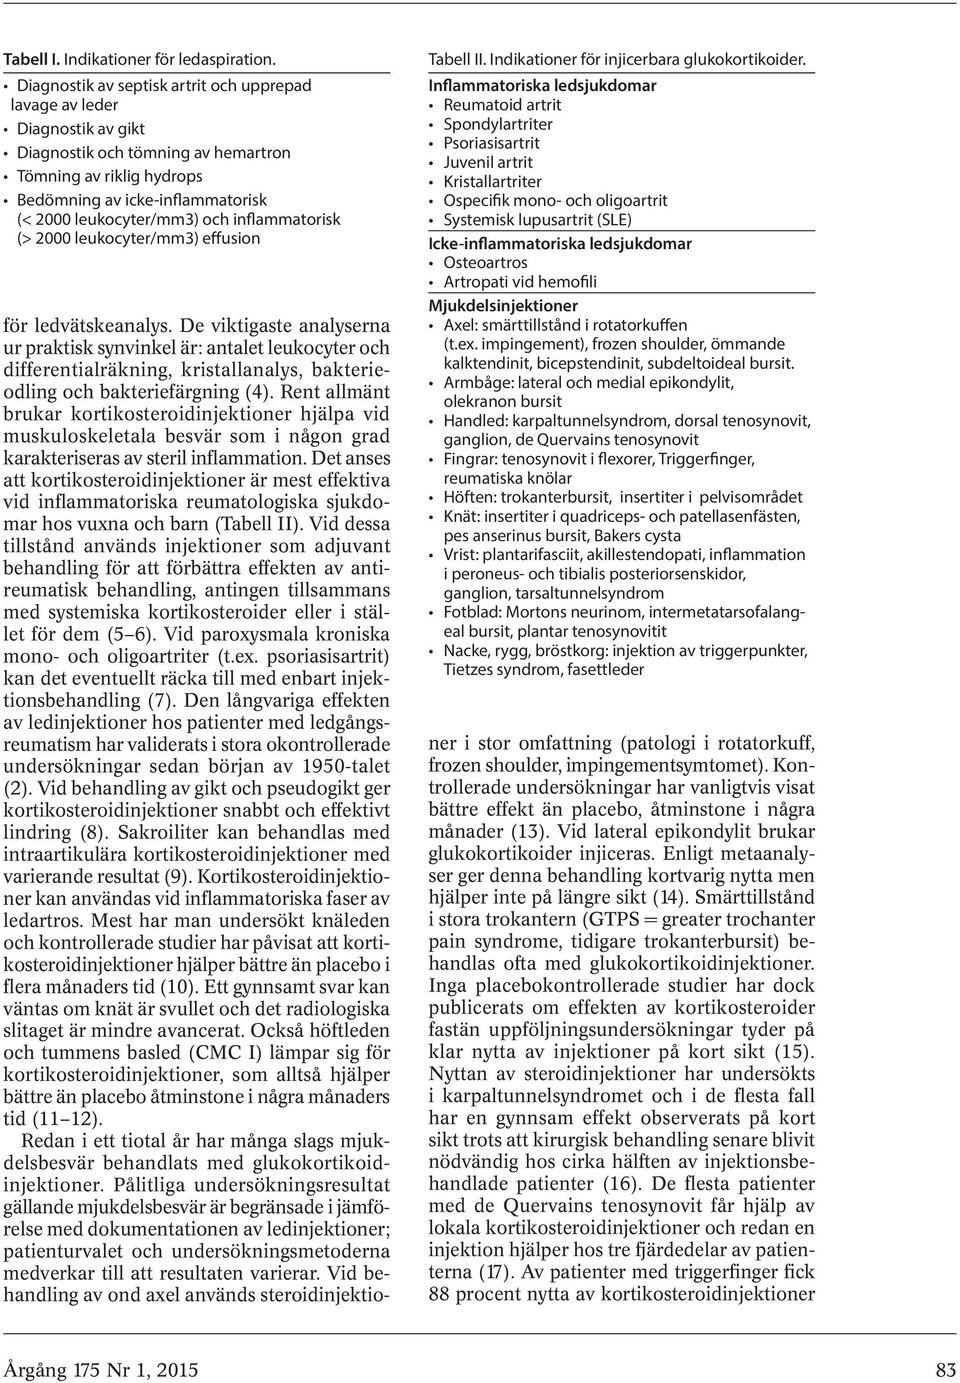 inflammatorisk (> 2000 leukocyter/mm3) effusion Tabell II. Indikationer för injicerbara glukokortikoider.